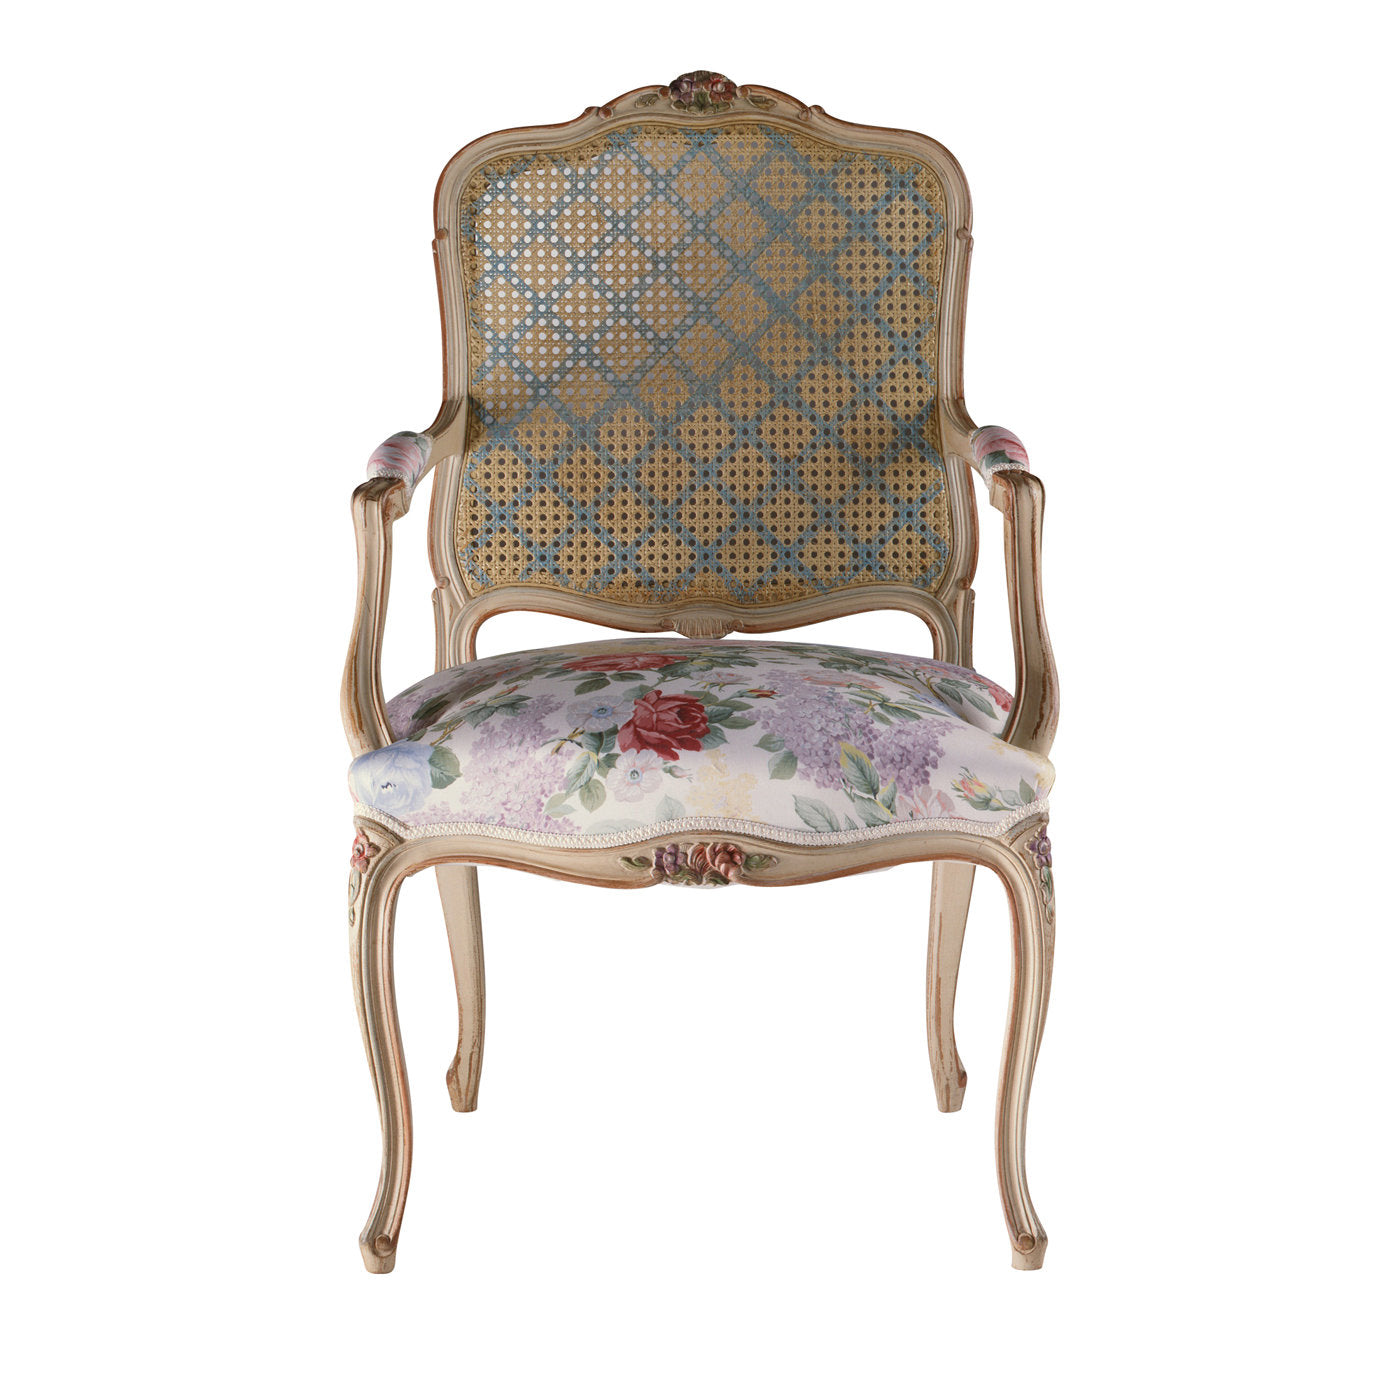 Luigi XV Chair - Main view